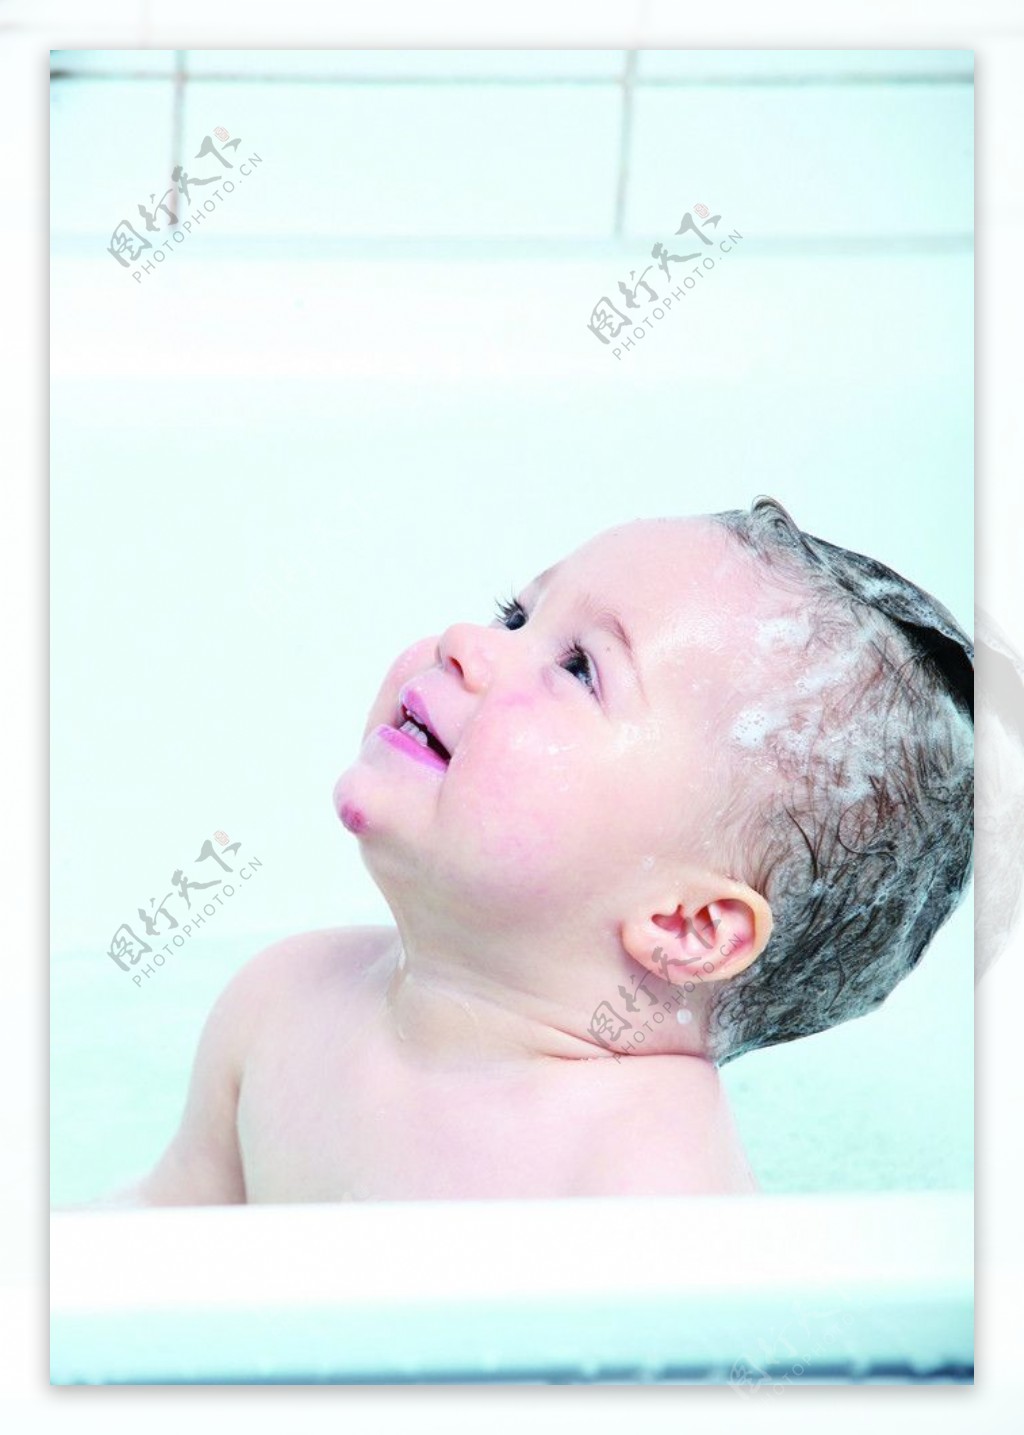 宝宝洗澡图片